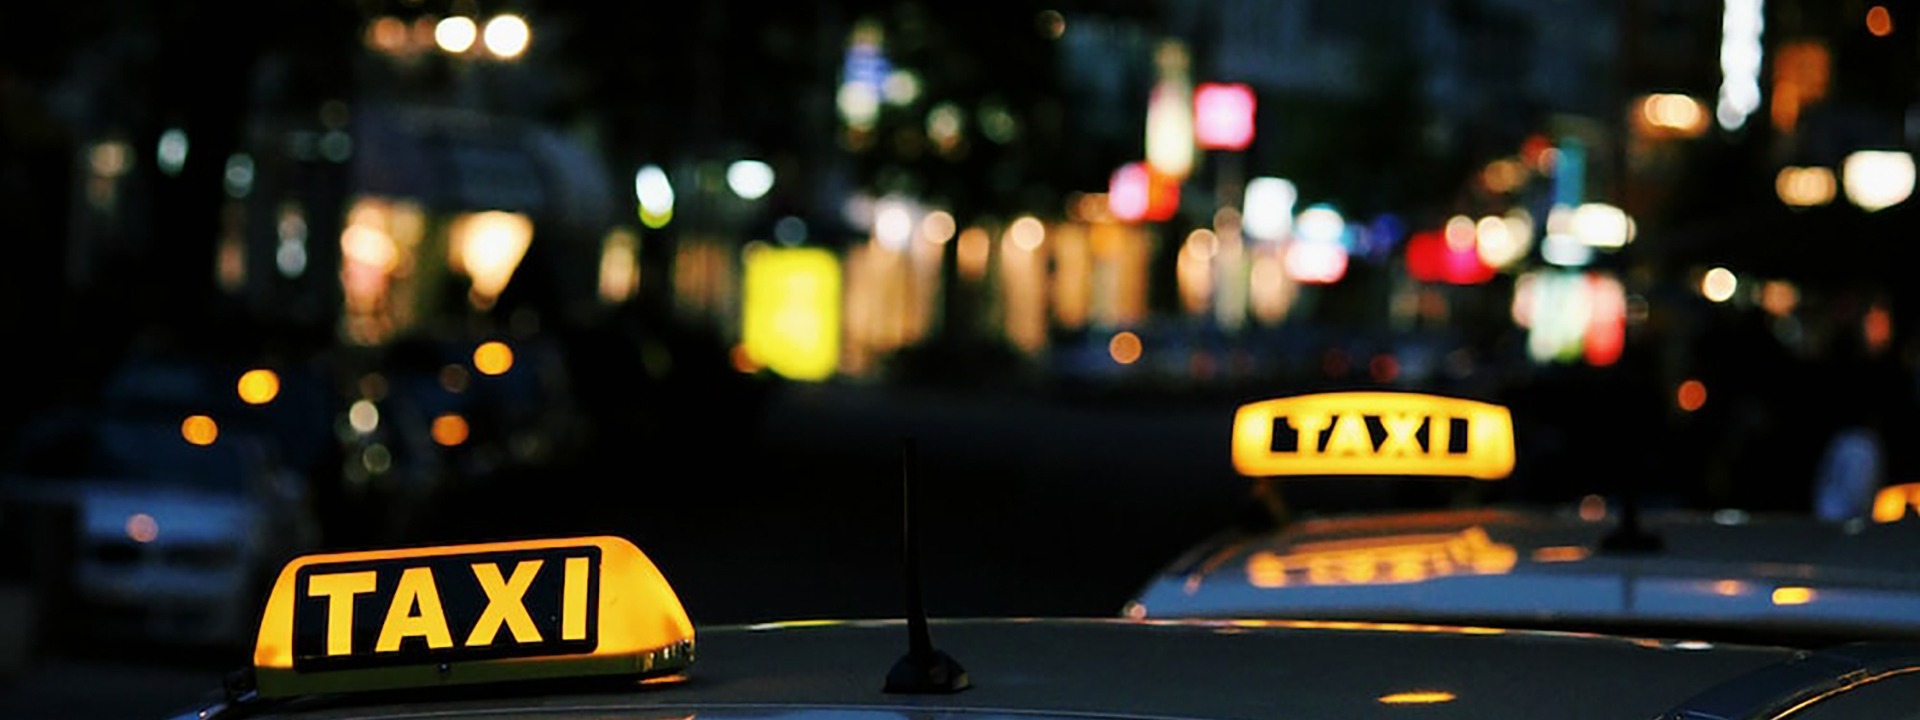 Taxi Serres - Ταξί Σέρρες